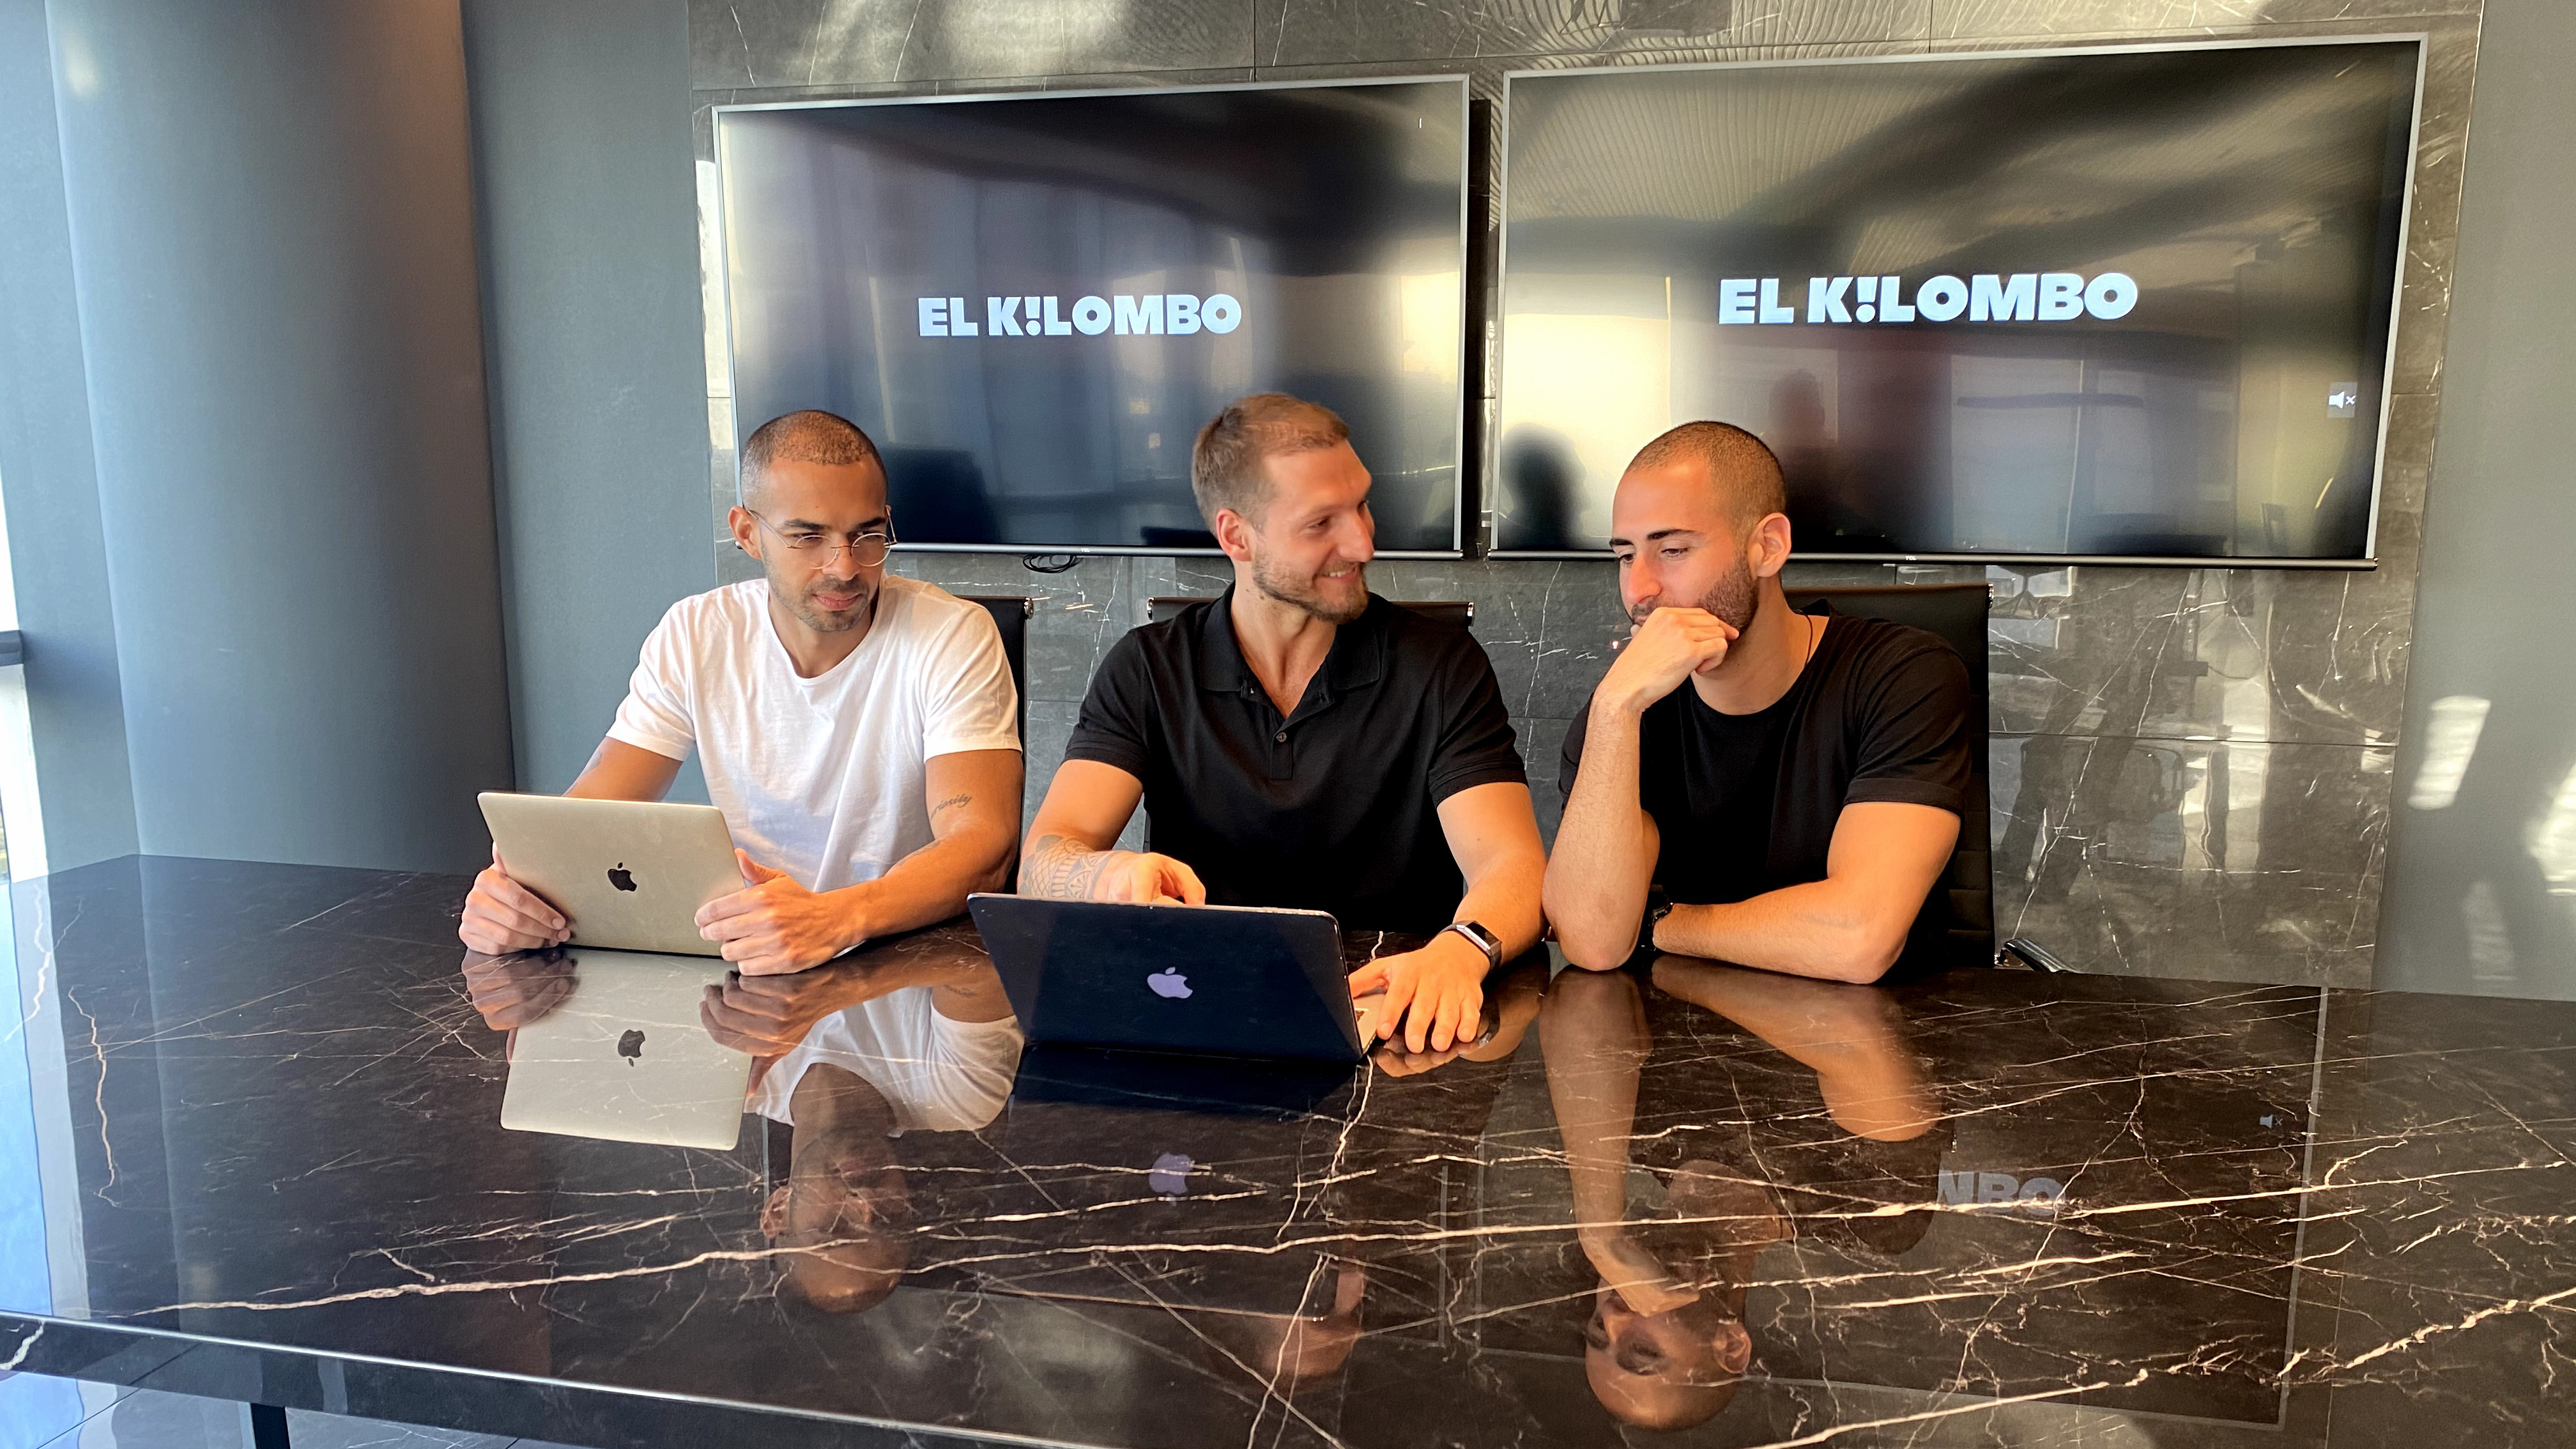  Edgar Anzola, Gabriel Gagliardoni y Javier Rios, amigos, socios y las caras ocultas detrás de El Kilombo